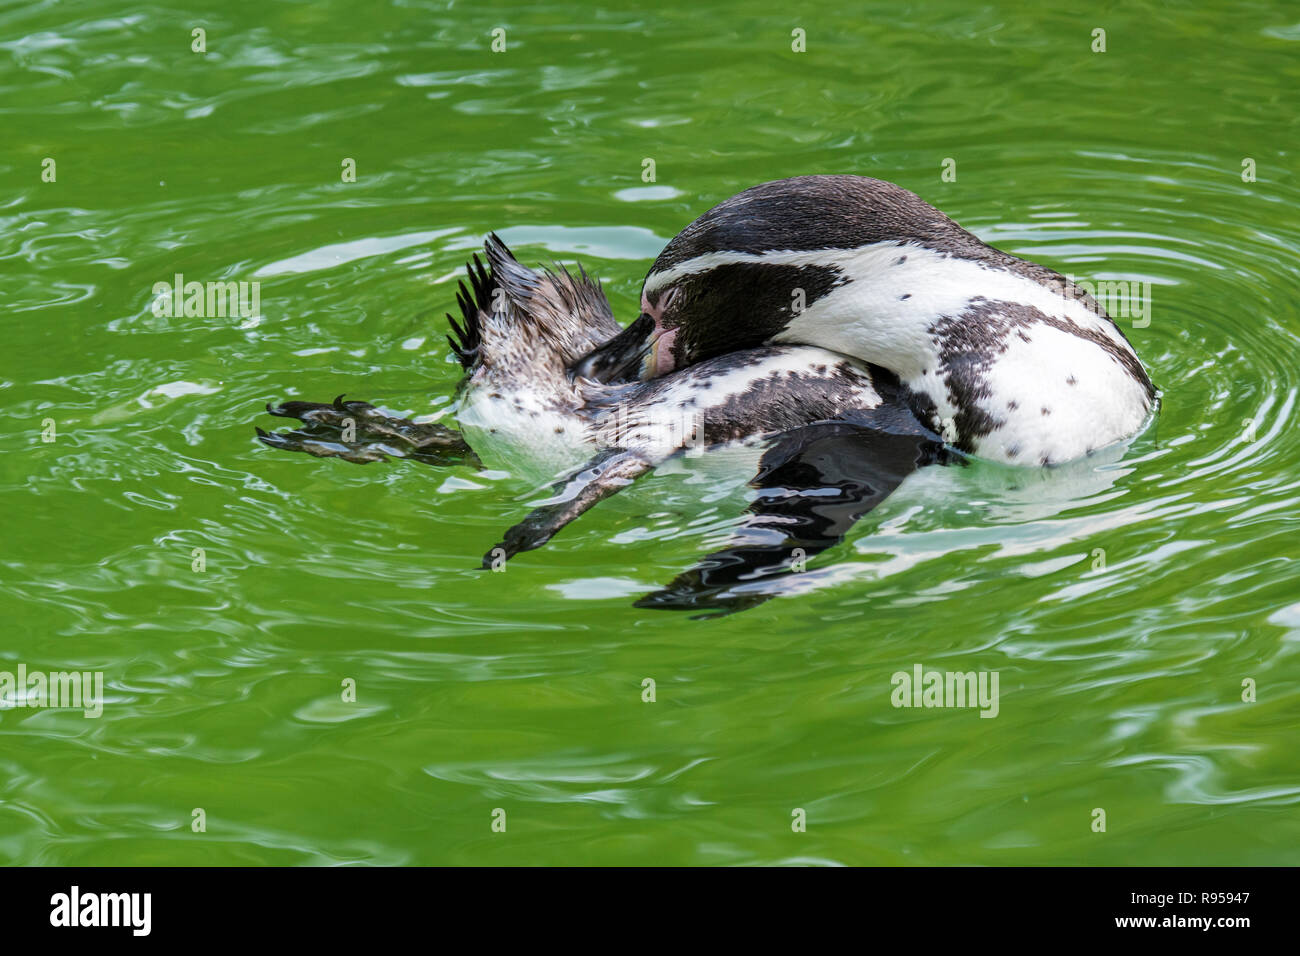 Manchot de Humboldt / patranca / Pingouin péruvien (Spheniscus humboldti) penguin d'Amérique du Sud tandis que la natation se lisser les plumes Banque D'Images